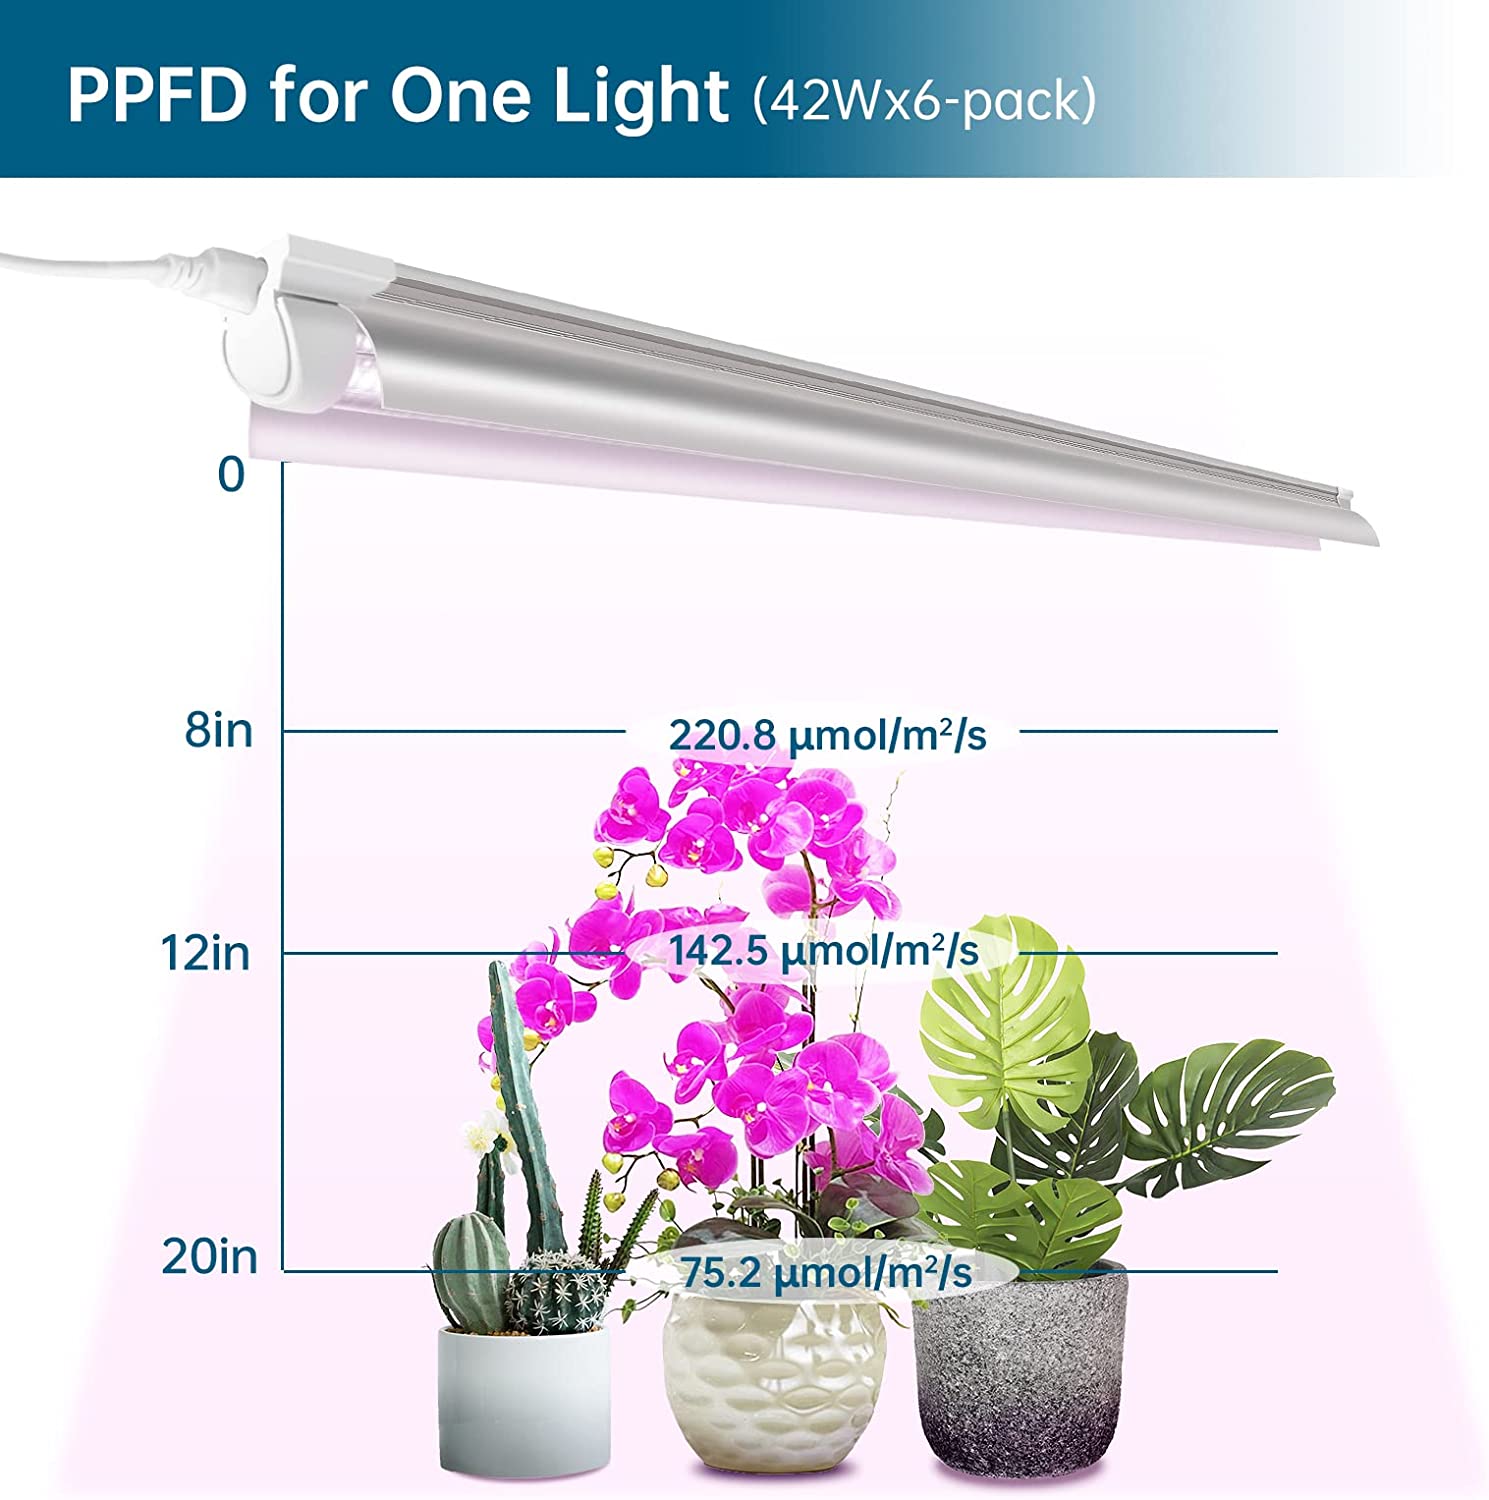 T8 LED Grow Light,4FT,42W,Pinkish White,Full Spectrum,Linkable,Reflector Design,6 Packs,QL42(FB) - Barrina led